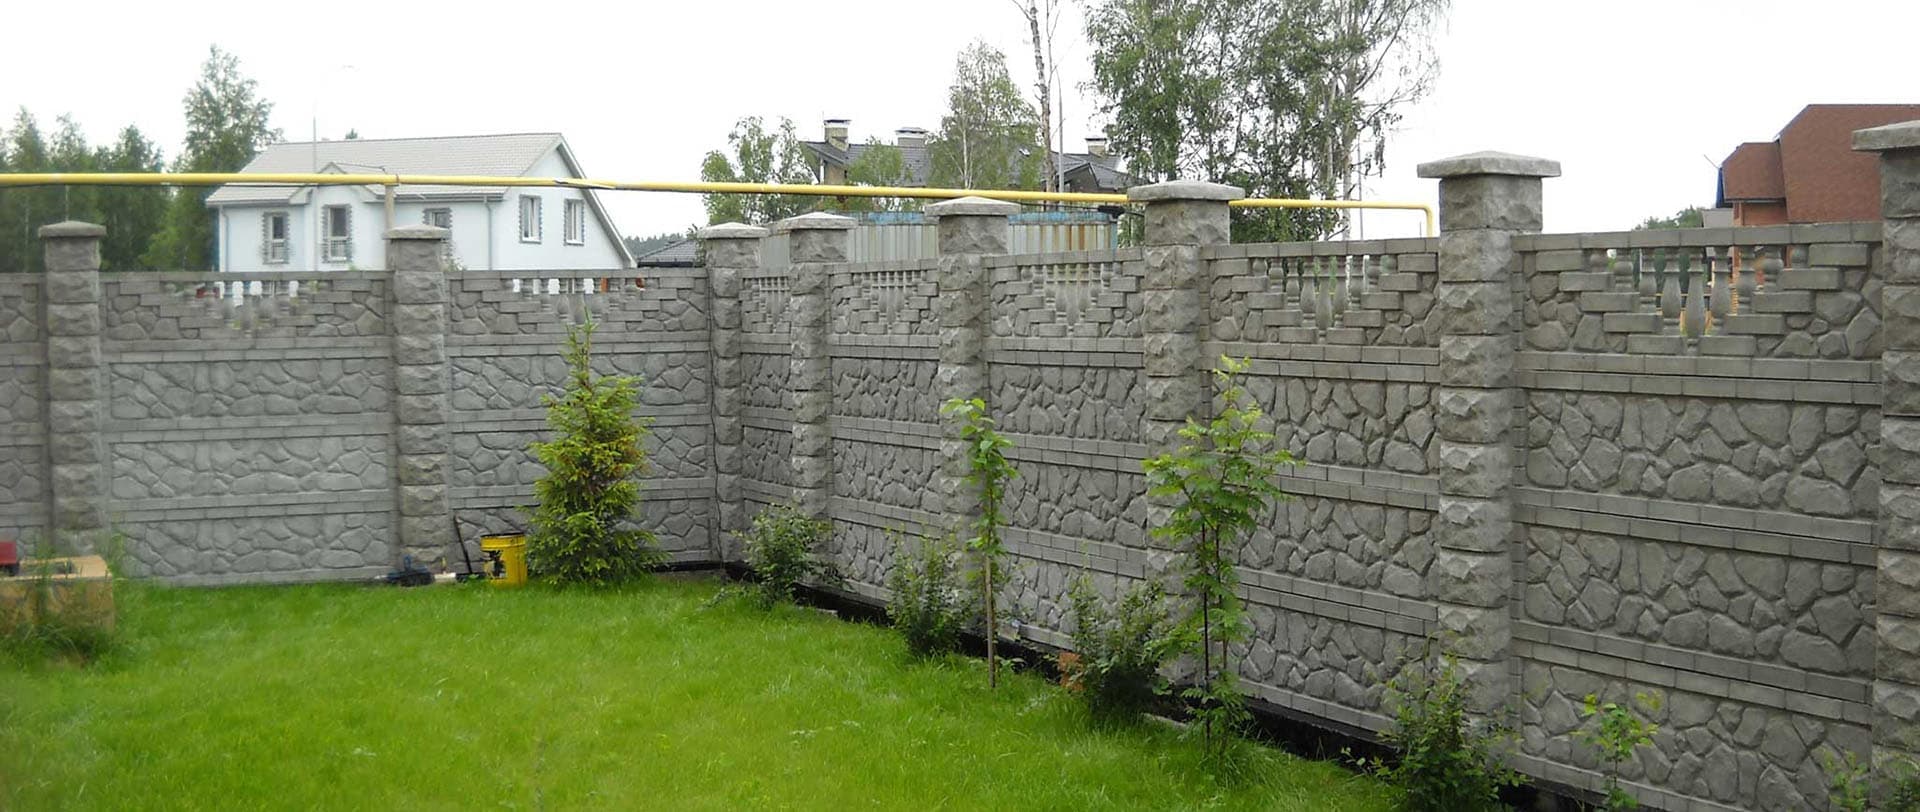 Как сделать бетонный забор своими руками